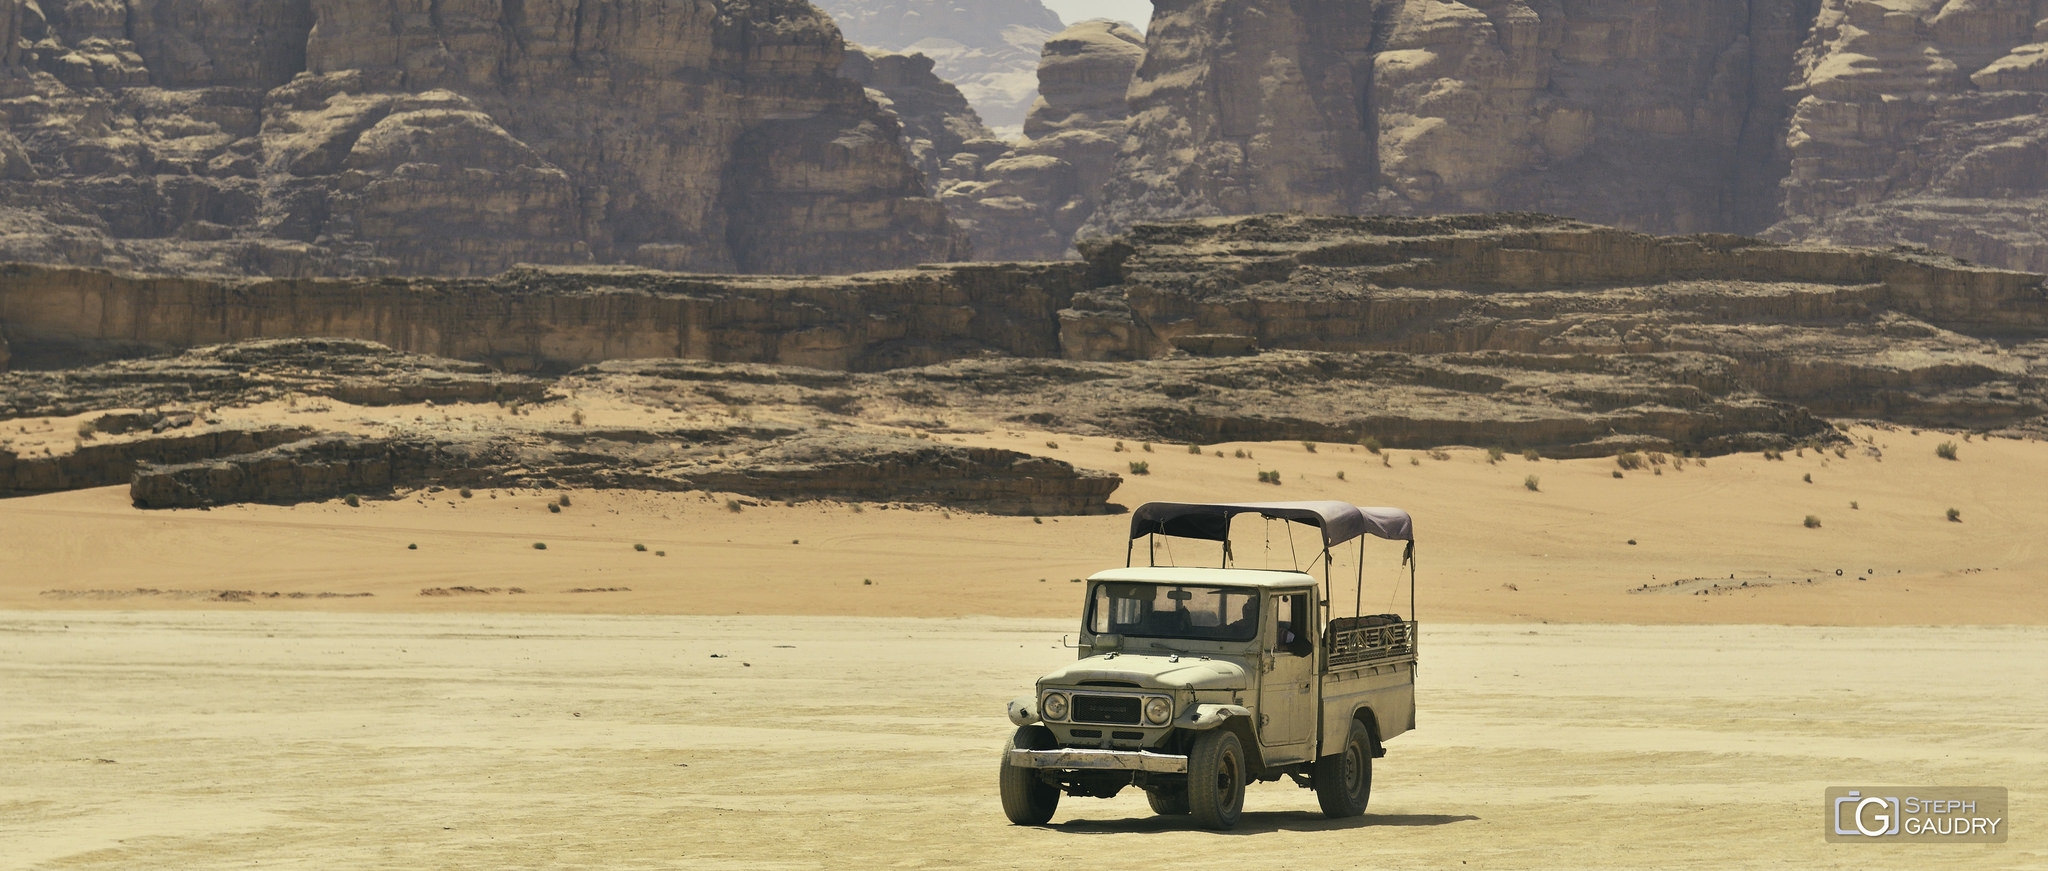 Wadi Rum 4x4 [Klicken Sie hier, um die Diashow zu starten]